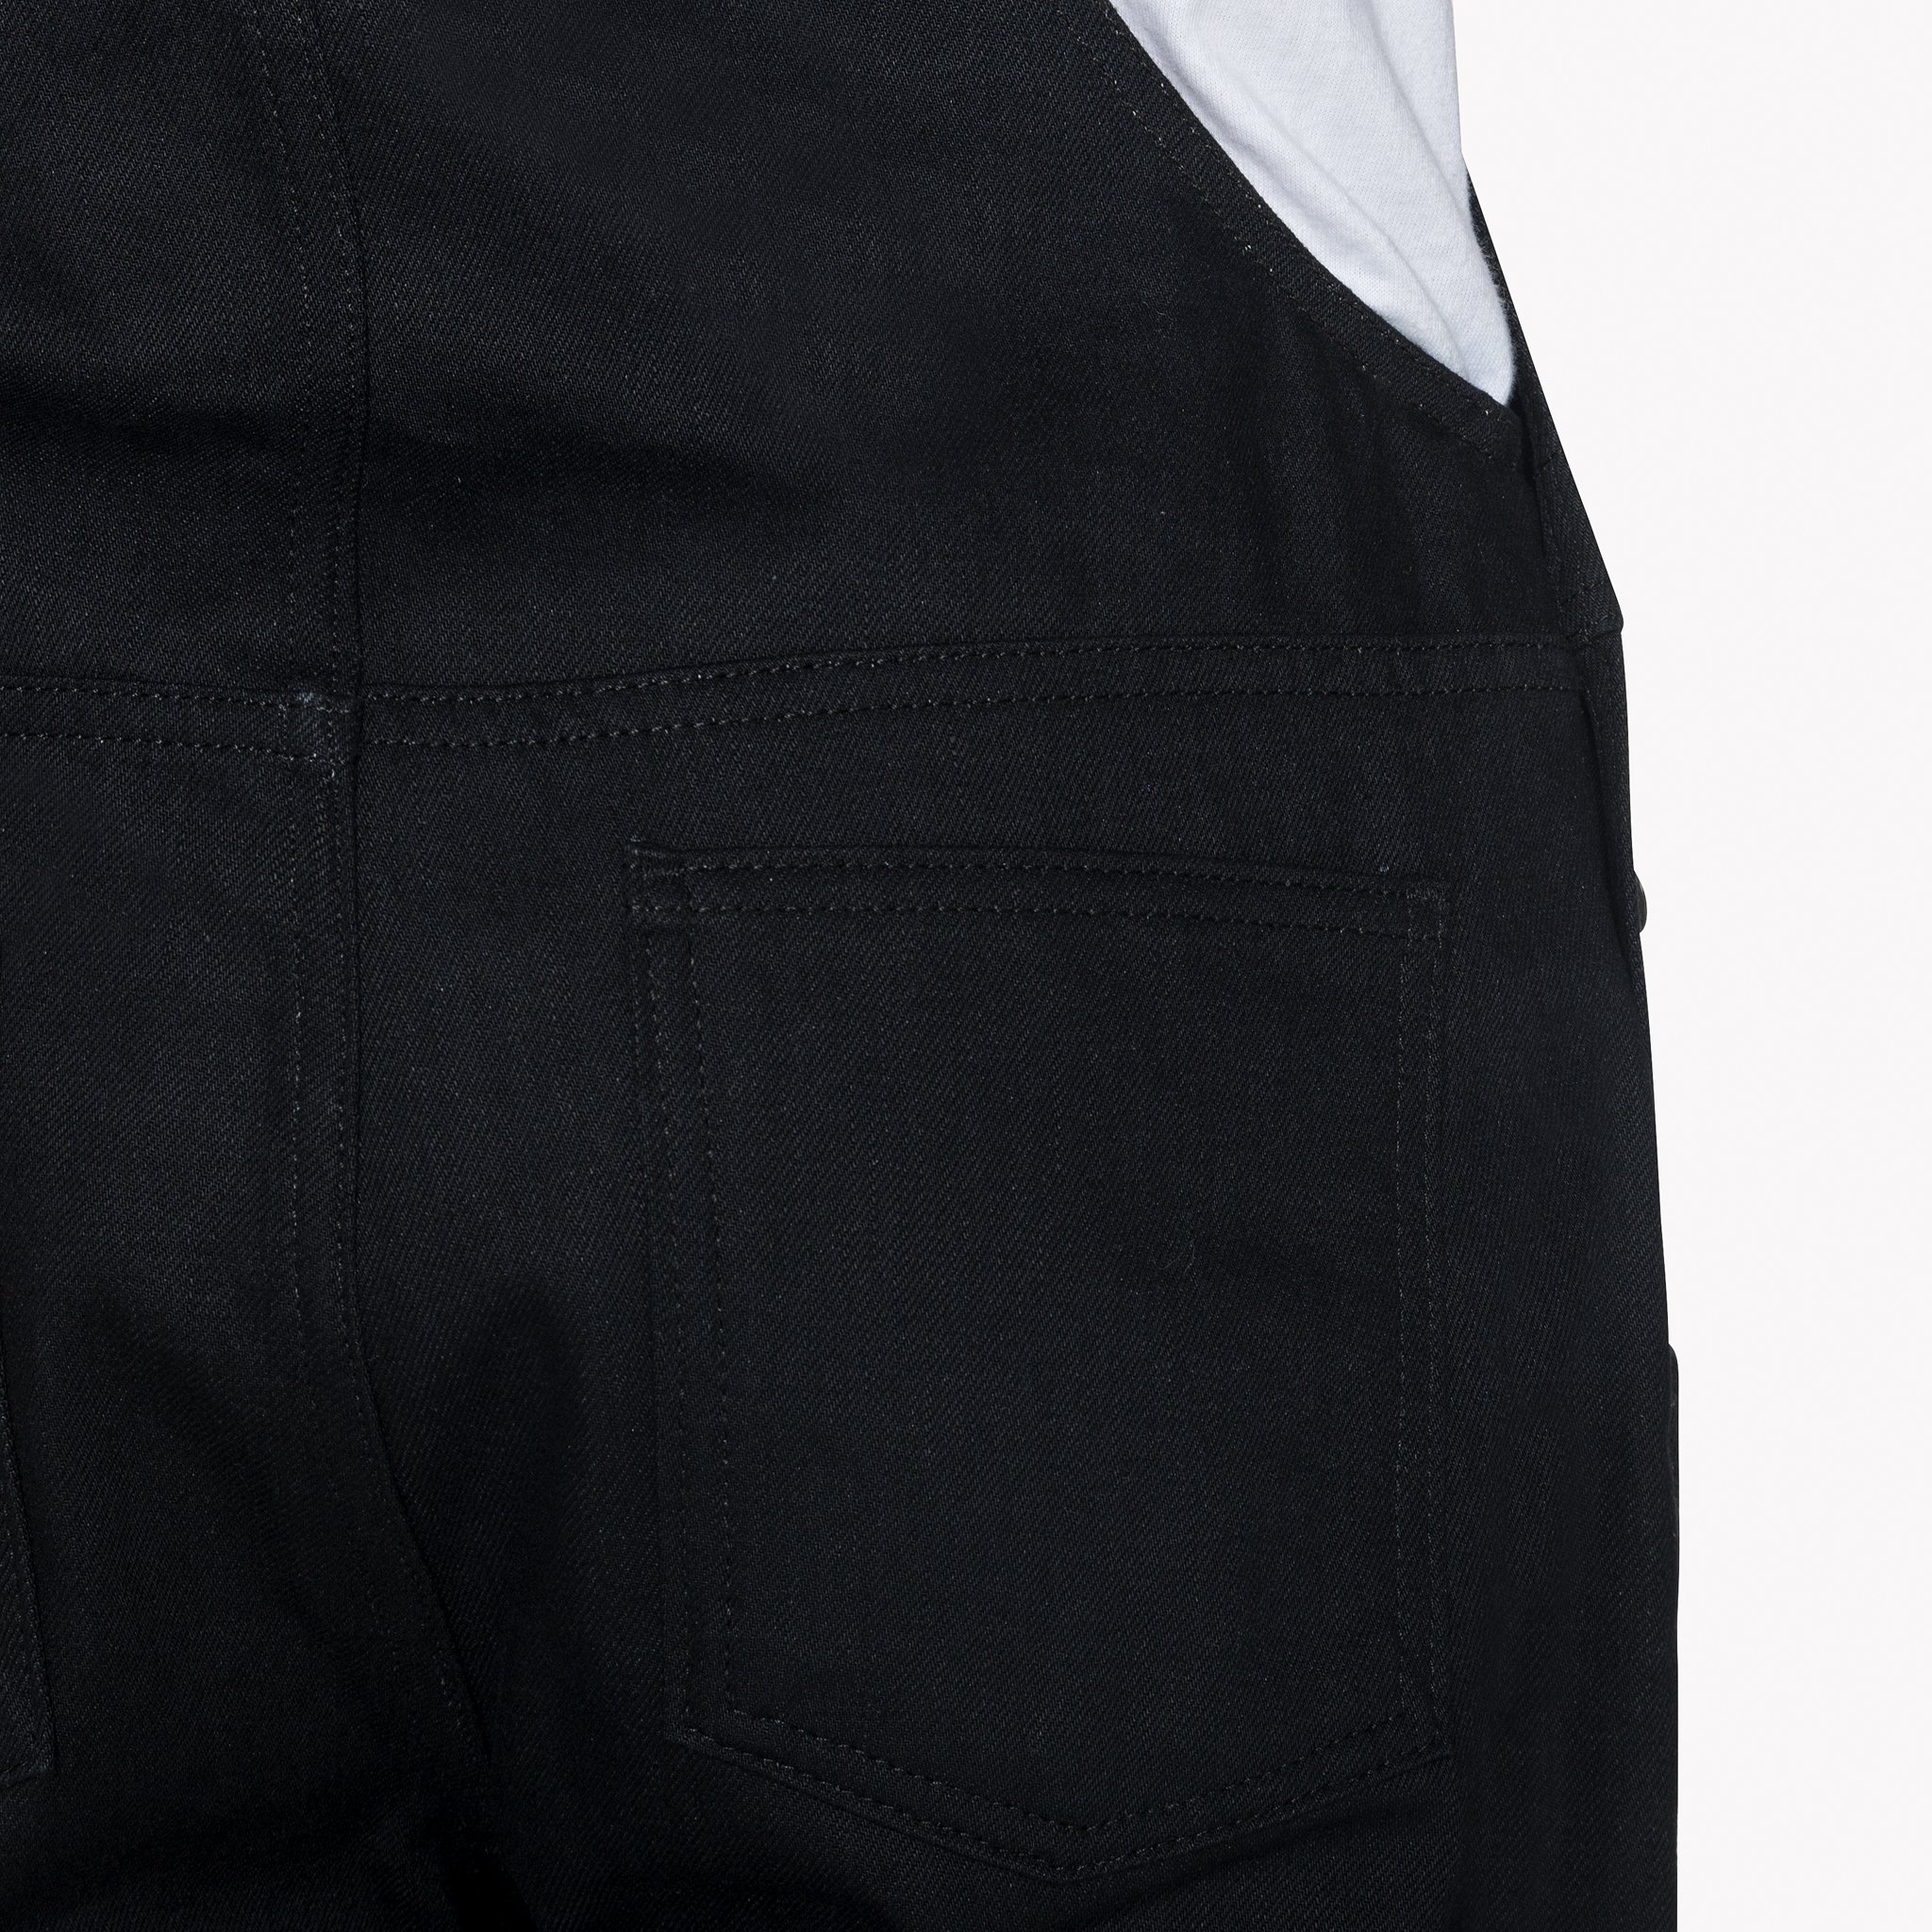  Overalls - Solid Black Selvedge - Back pocket 